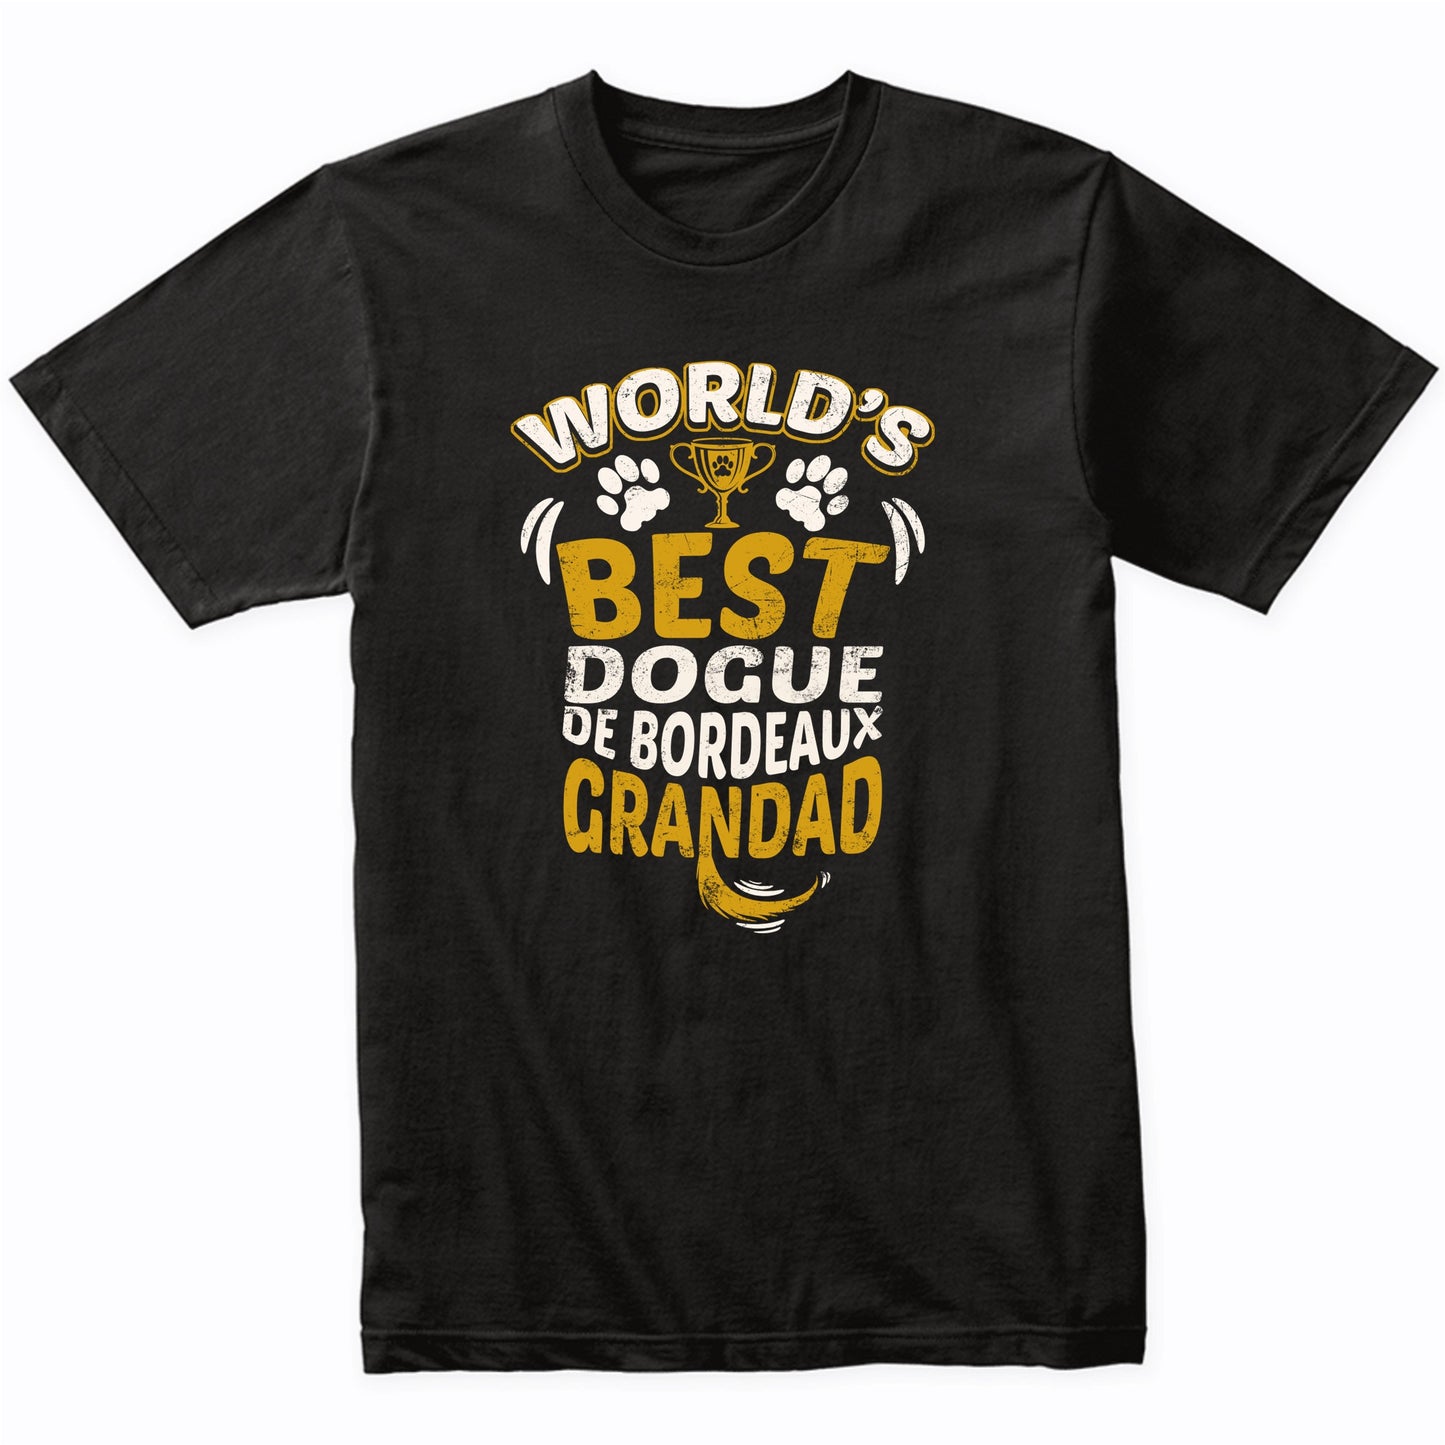 World's Best Dogue de Bordeaux Grandad Graphic T-Shirt